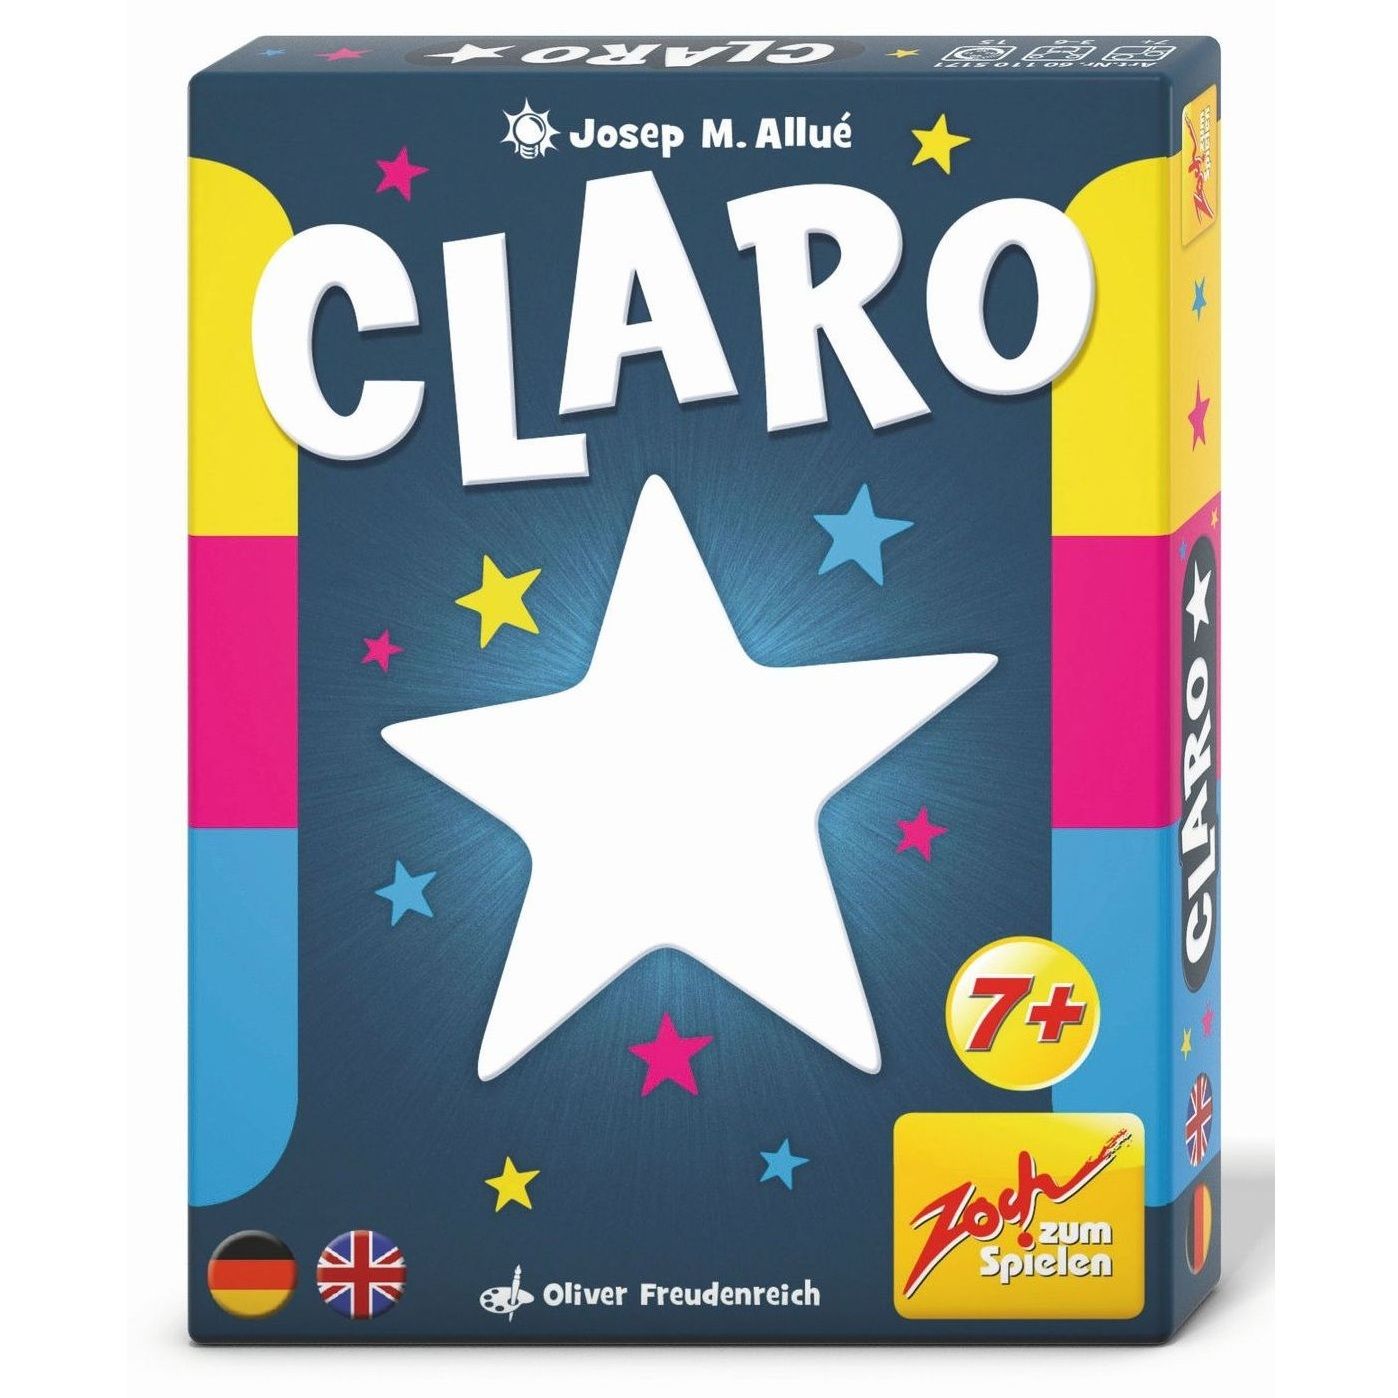 Wer zuletzt spielt, siegt als Erster: Kartenspiel "Claro" von Zoch